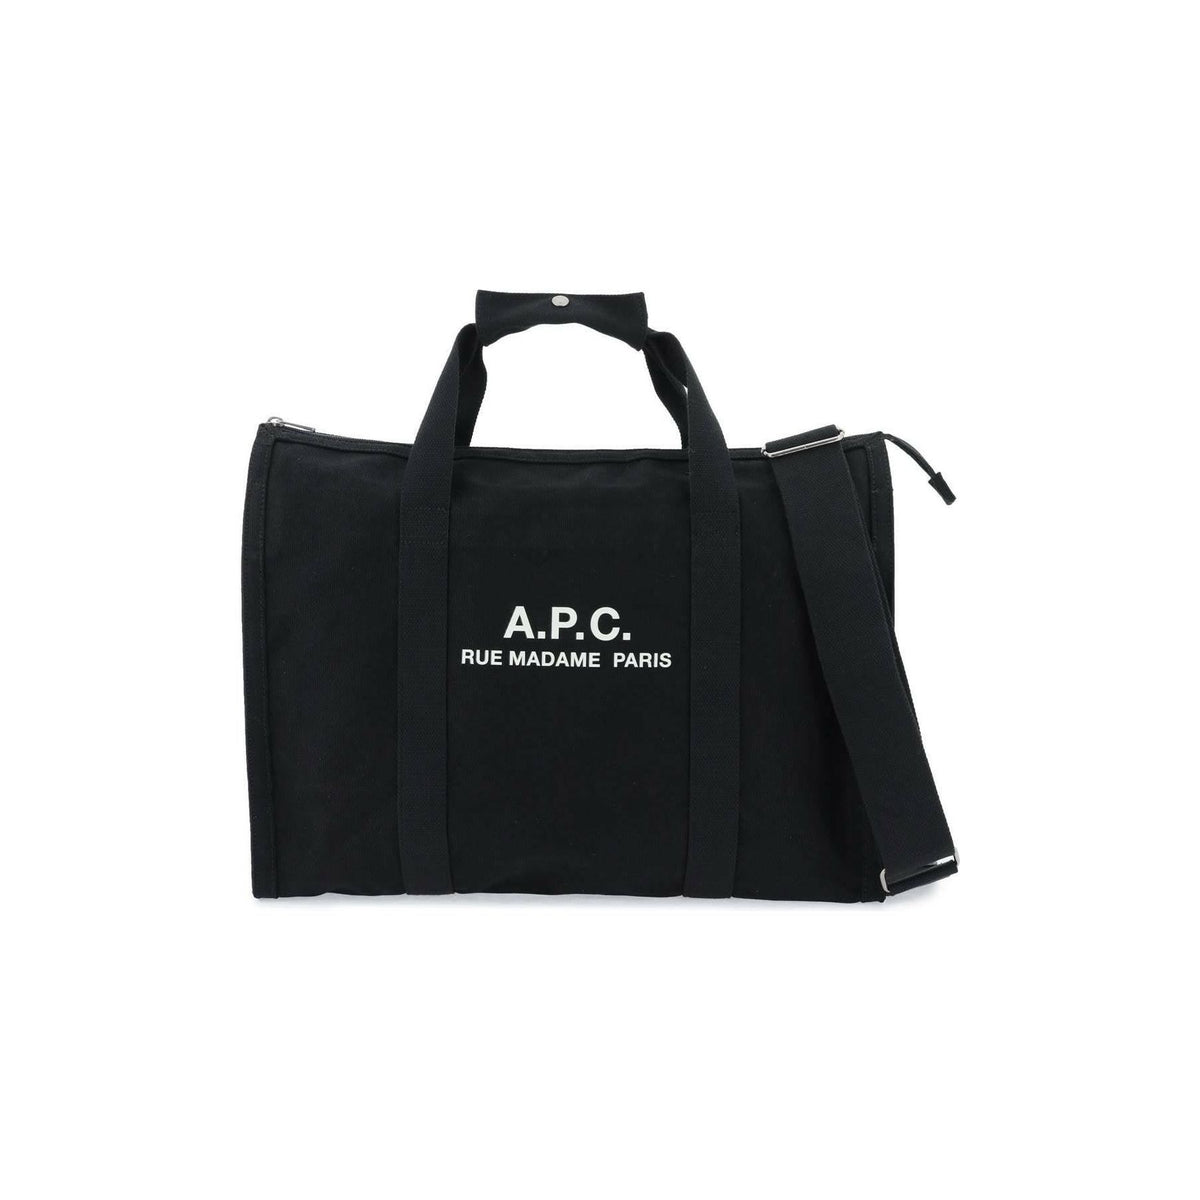 A.P.C. - Black Récupération Tote Bag - JOHN JULIA